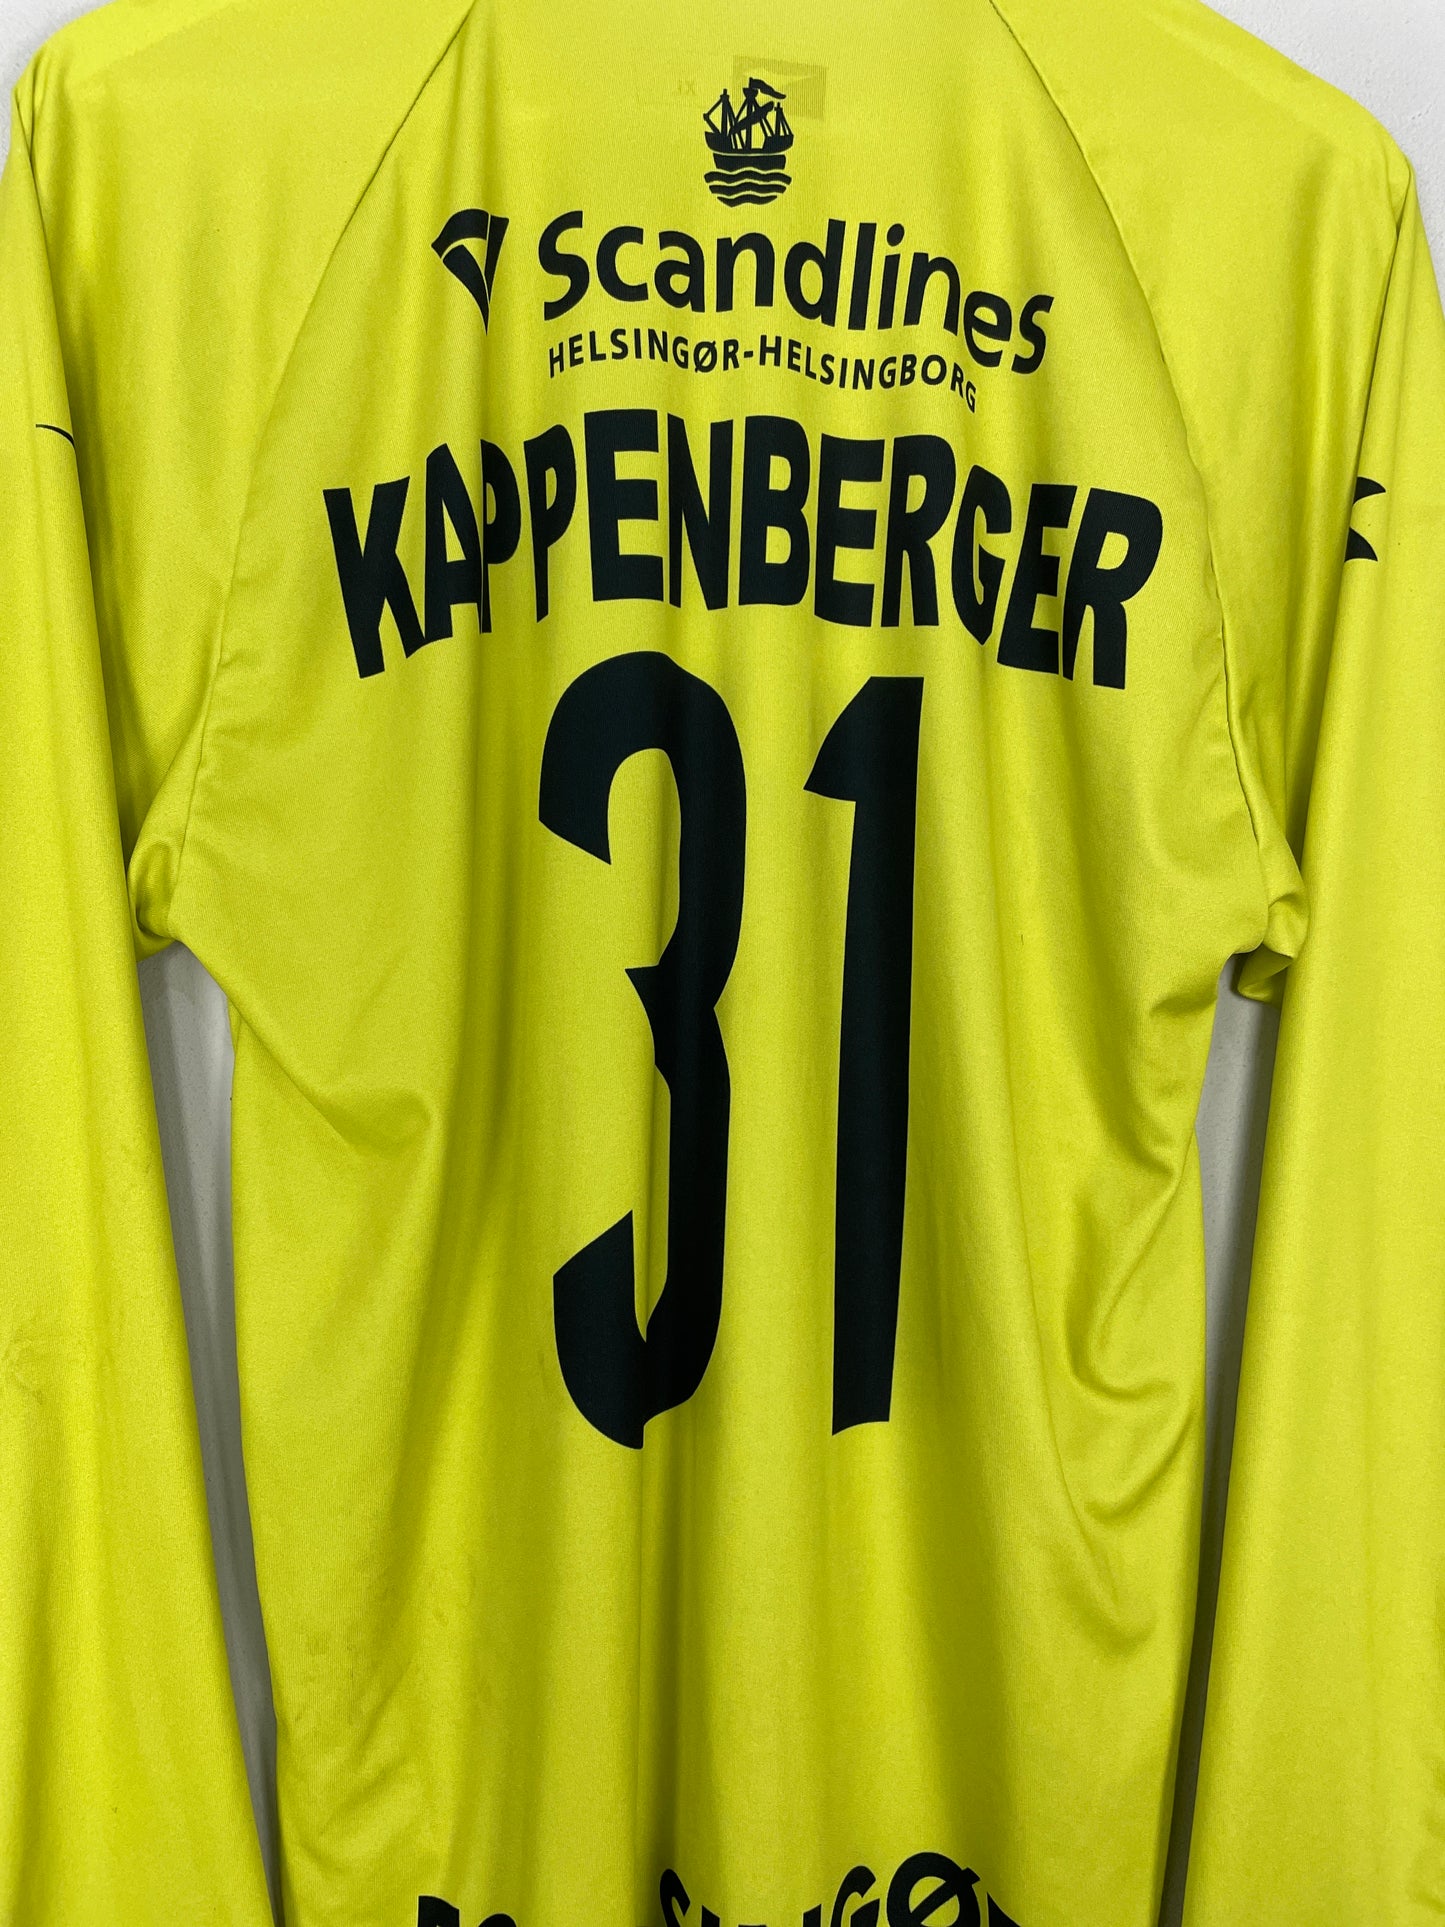 2017/18 FC HELSINGOR KAPPENBERGER #31 GK SHIRT (XL) DIADORA